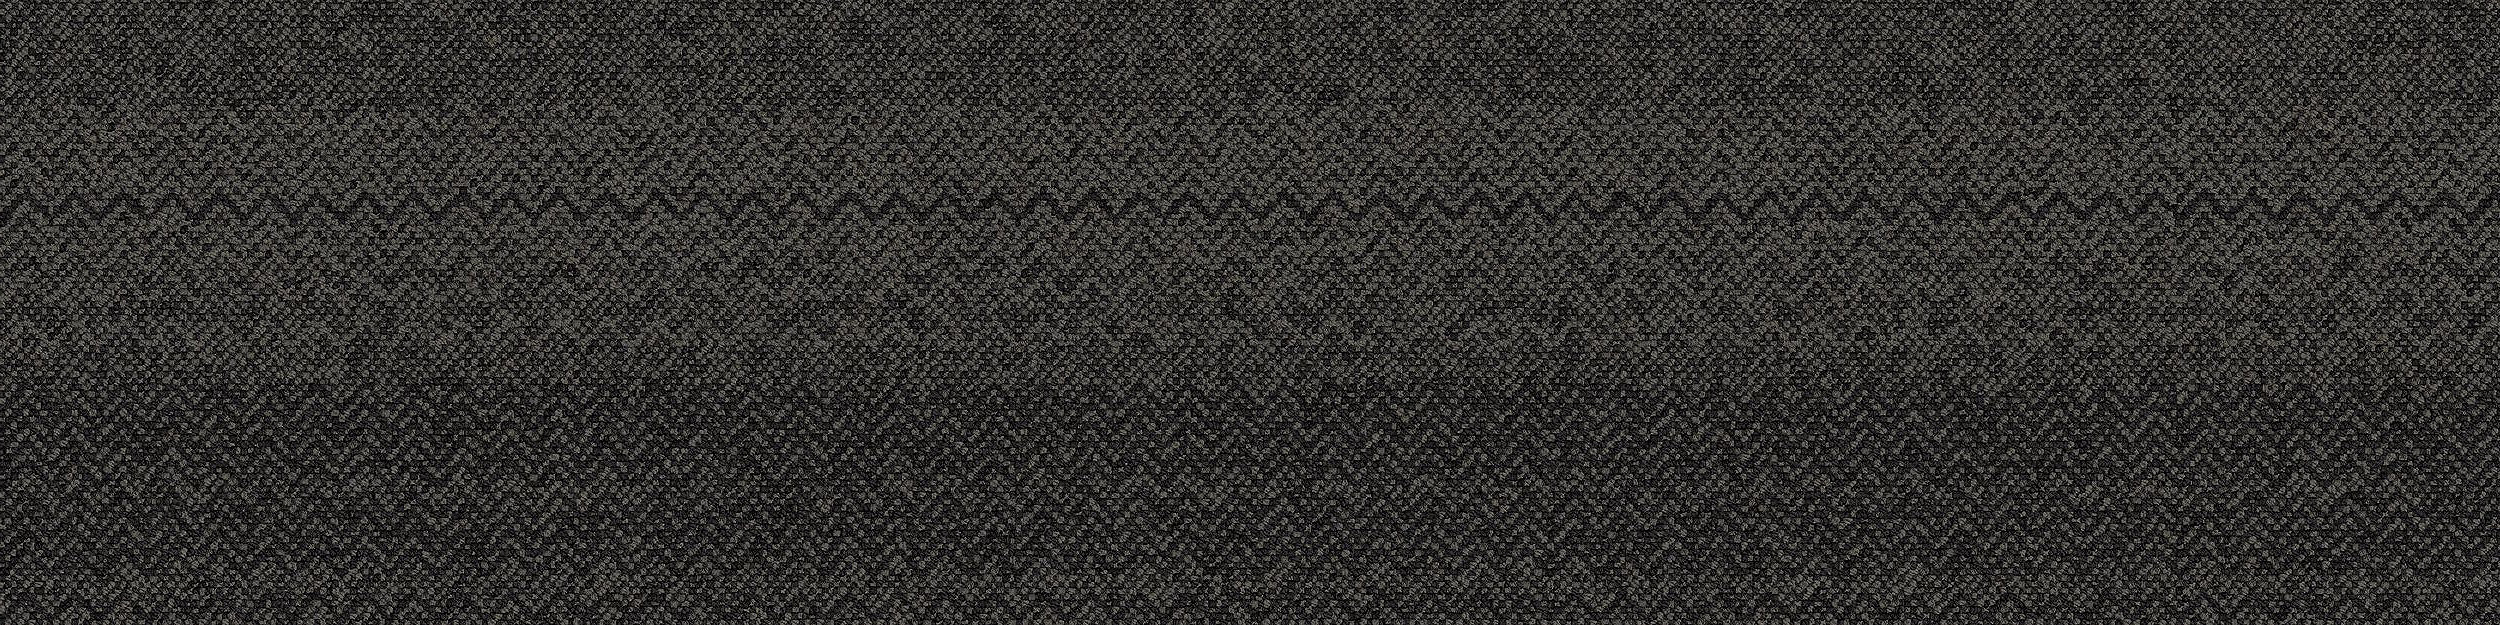 Stitchery Carpet Tile In Slate Stitchery numéro d’image 6